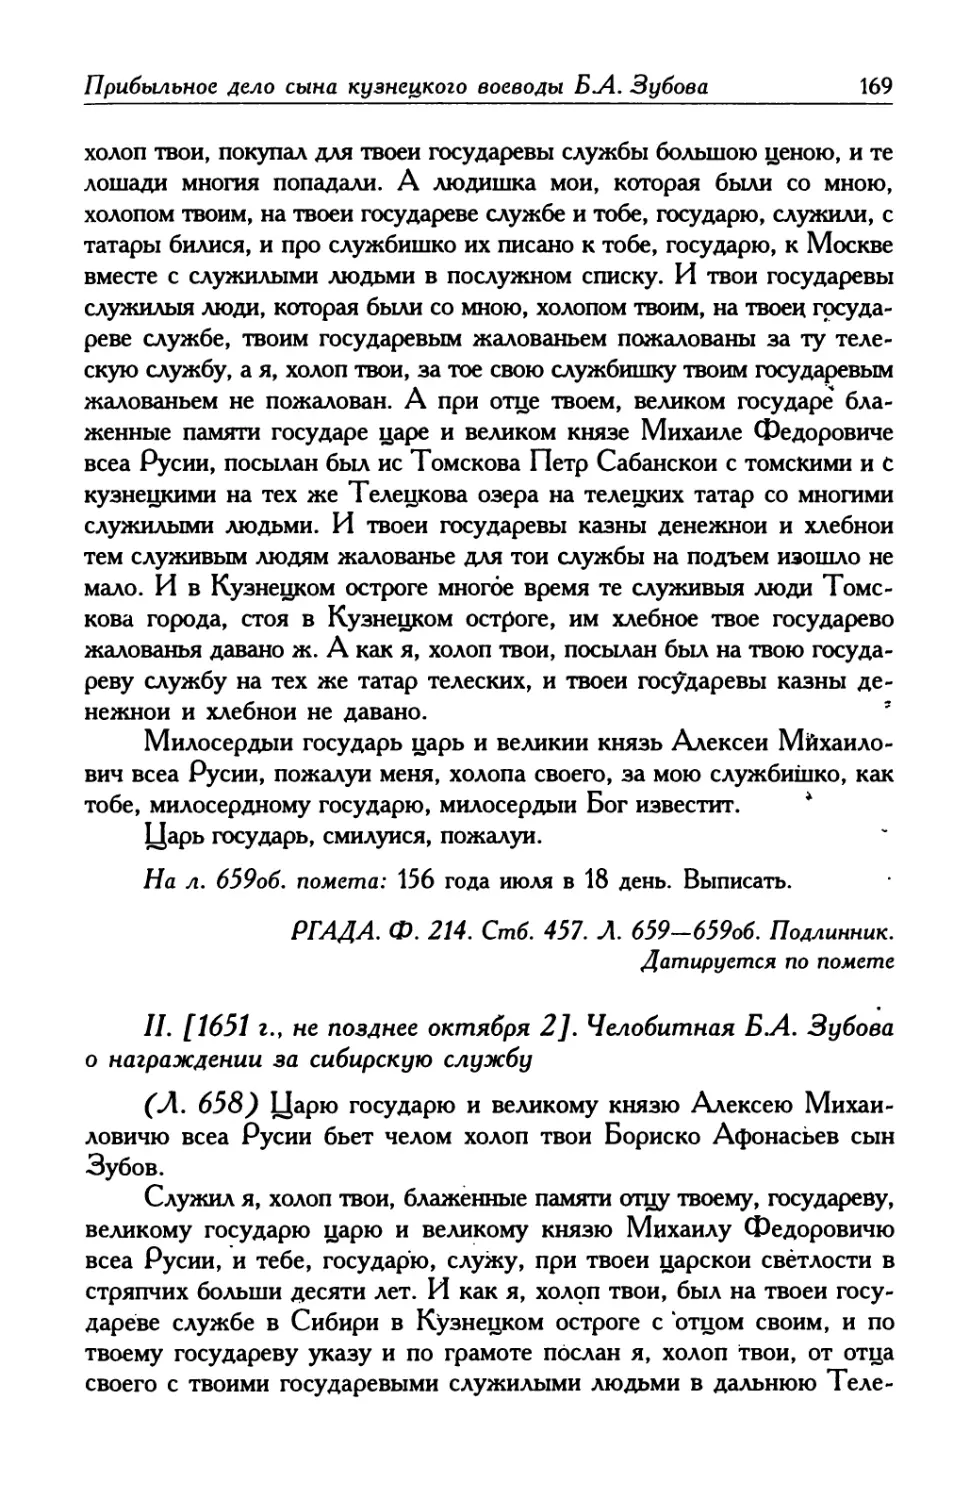 II. [1651 г., не позднее октября 2] Челобитная Б. А. Зубова о награждении за сибирскую службу